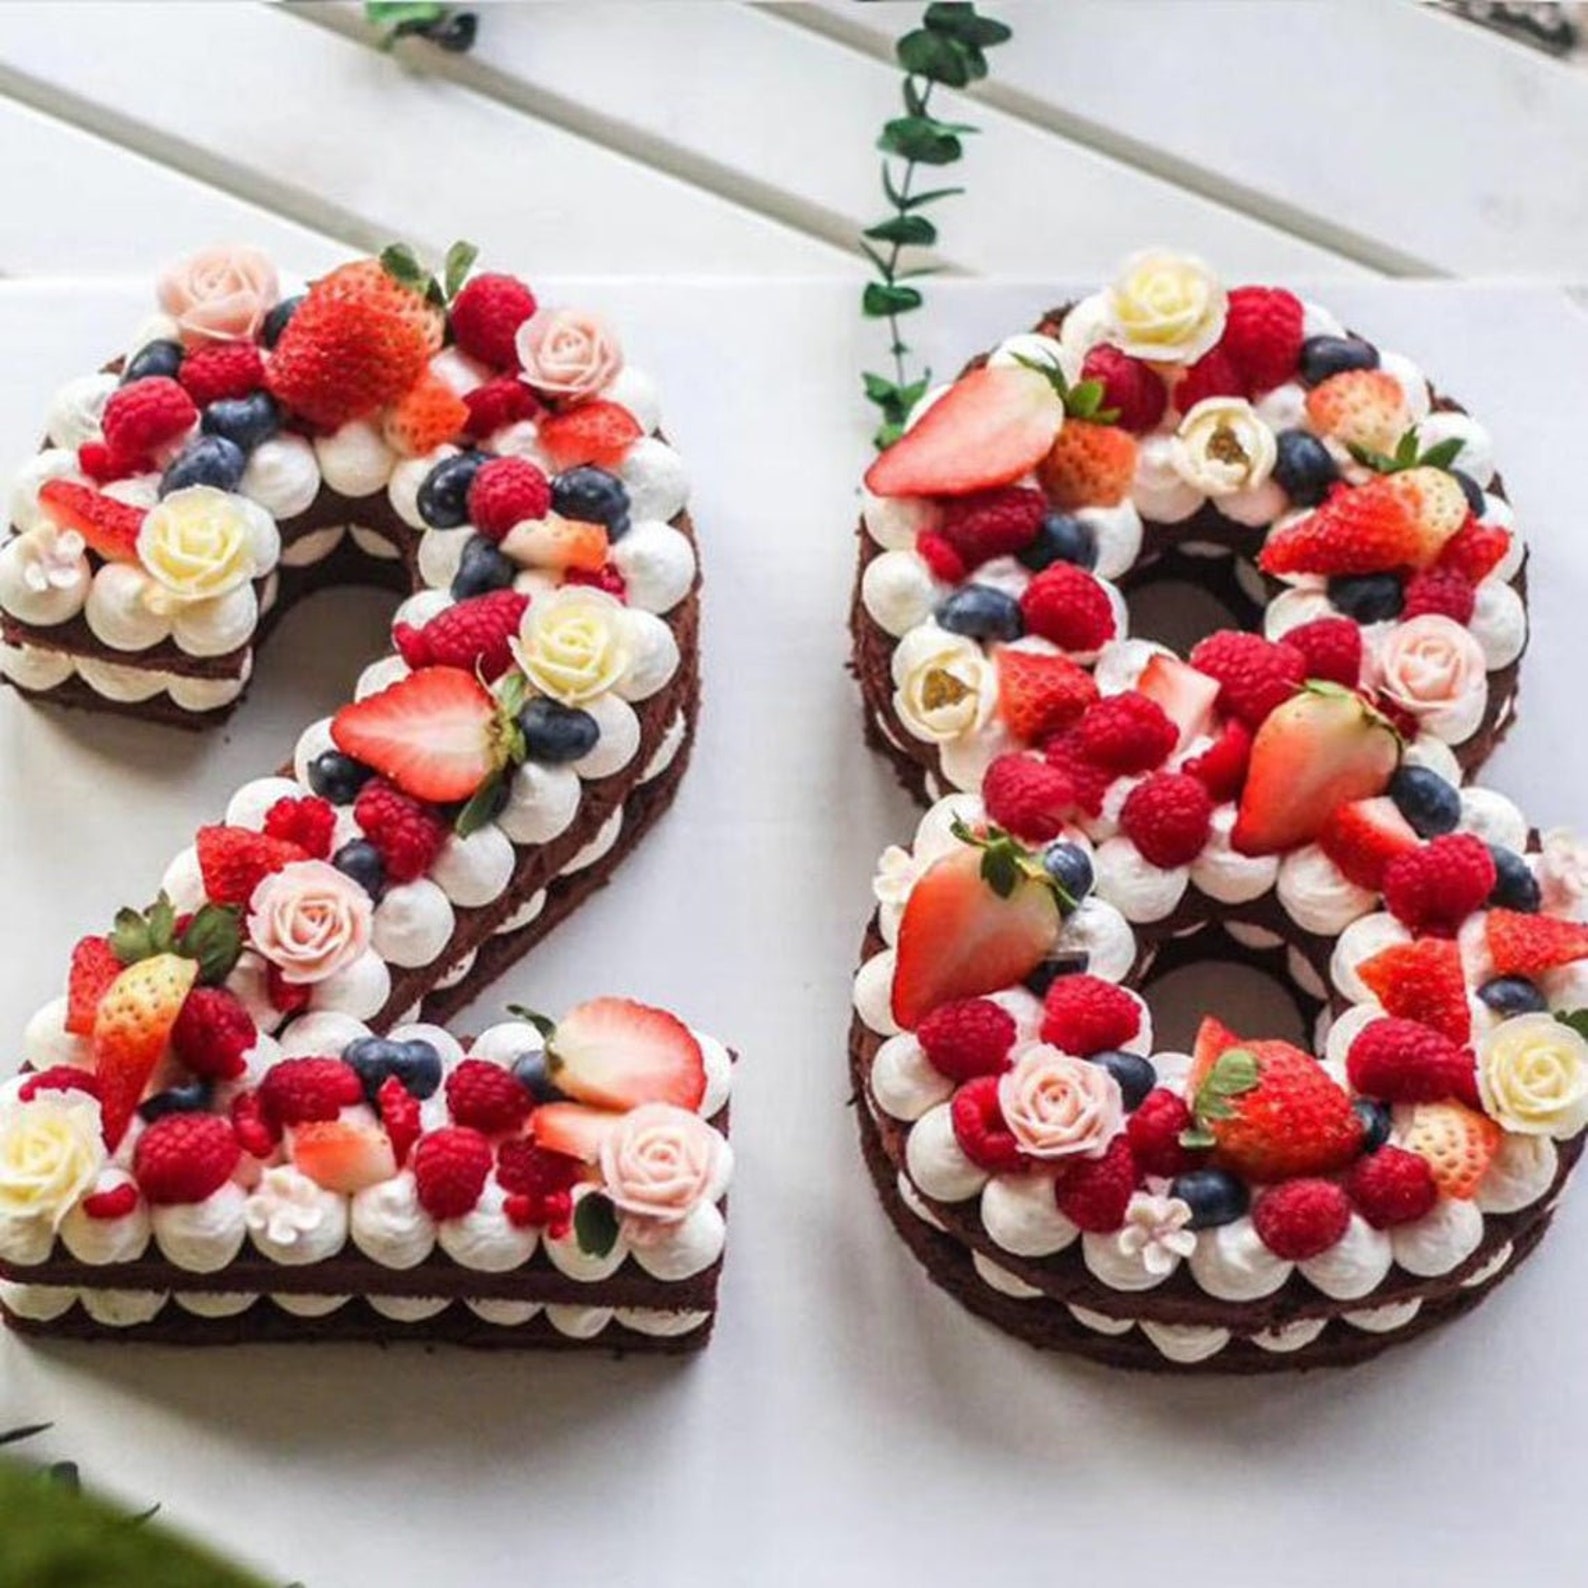 torte di compleanno originali per donne - Ricettepercucinare.com